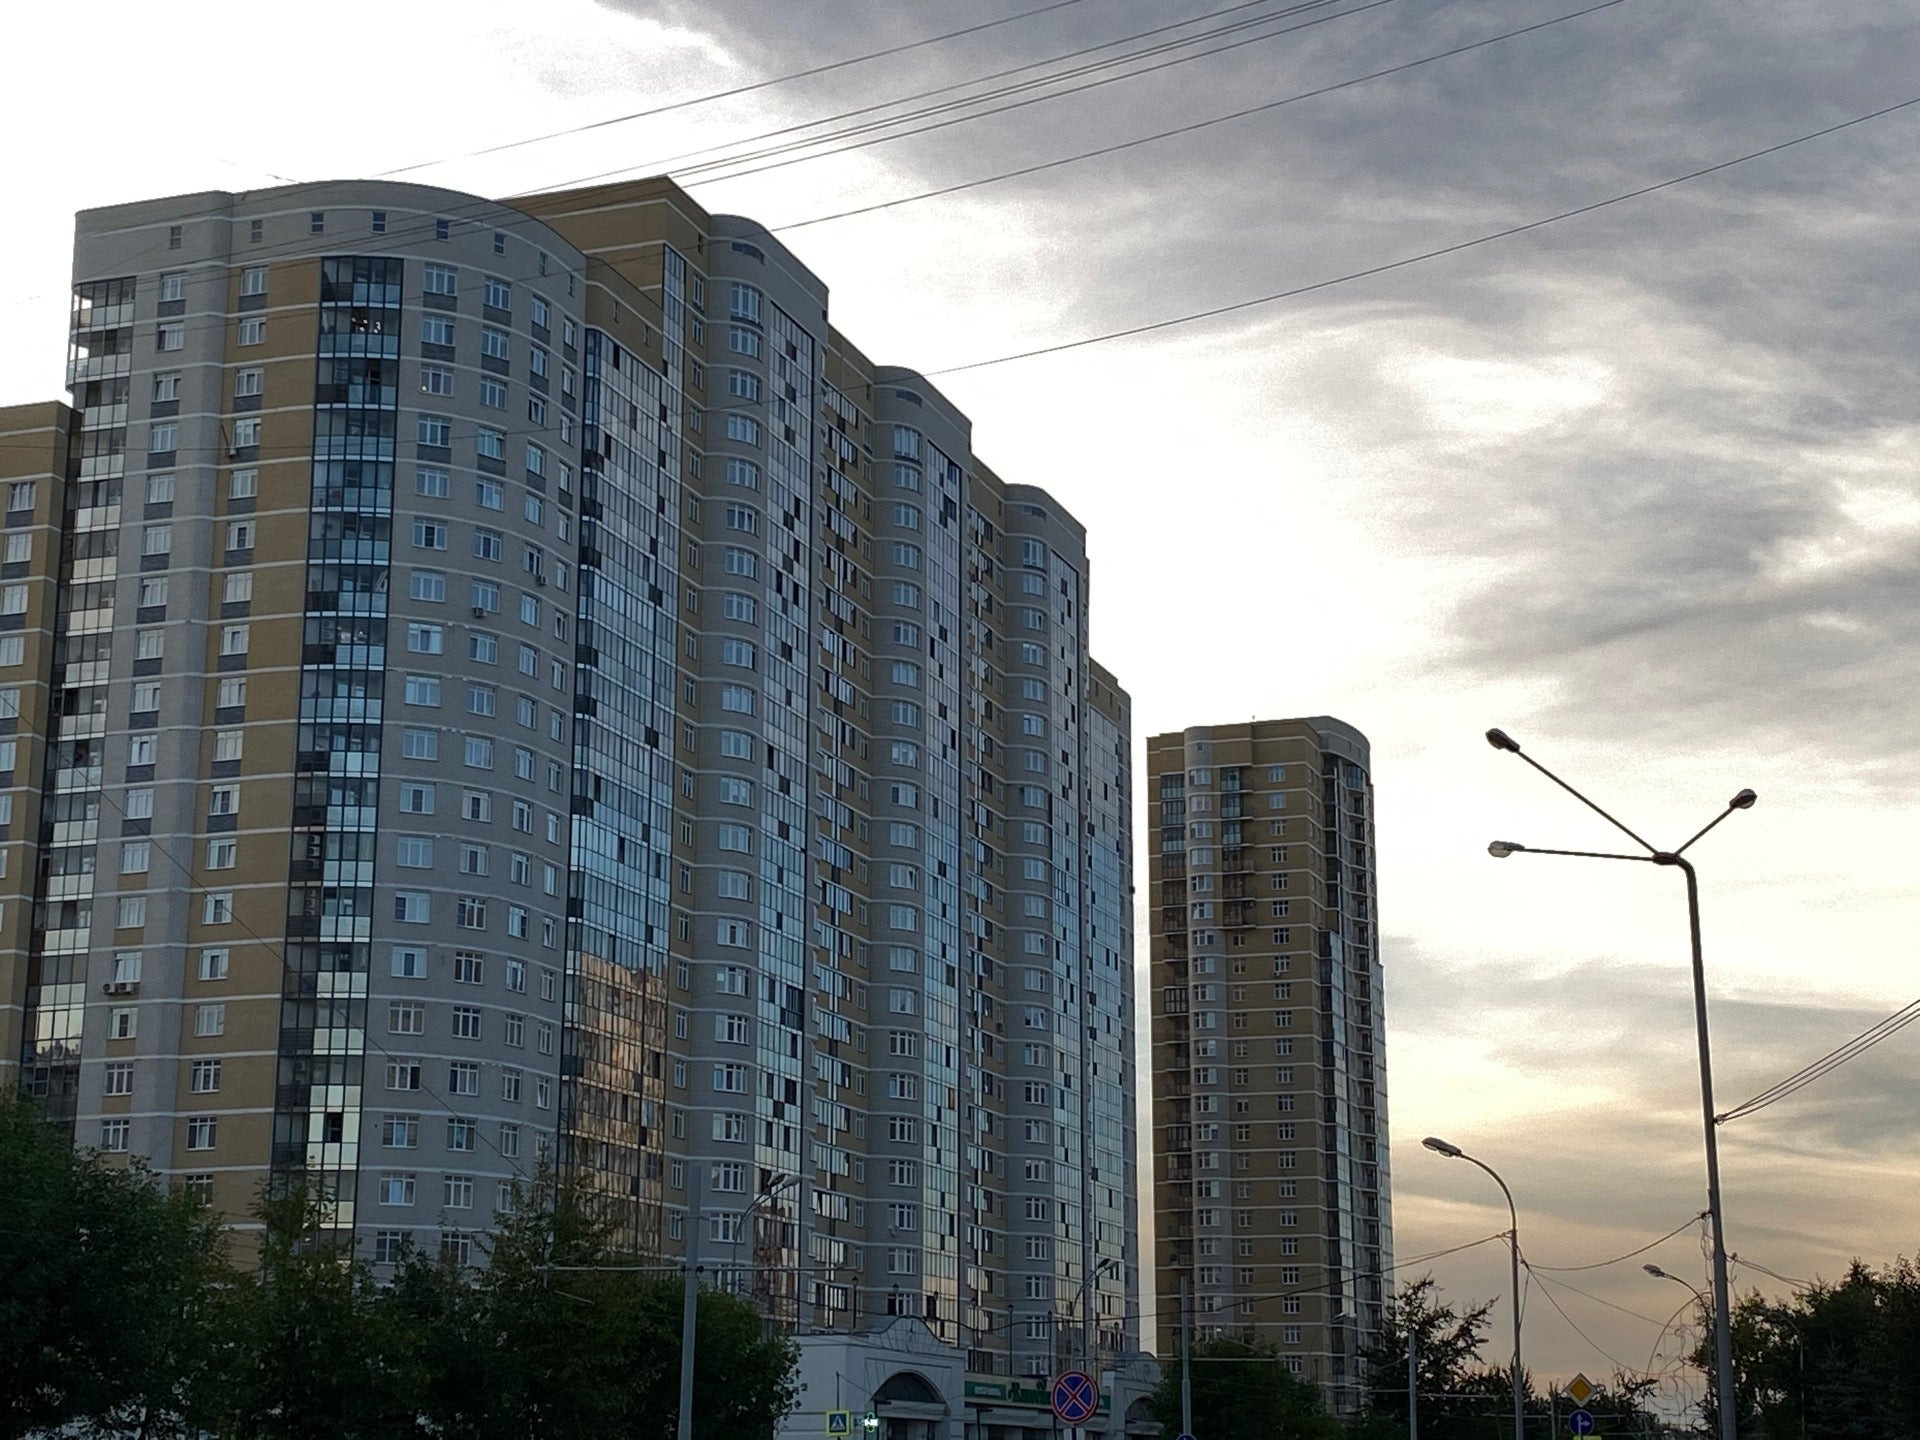 фото чкаловского района города екатеринбурга